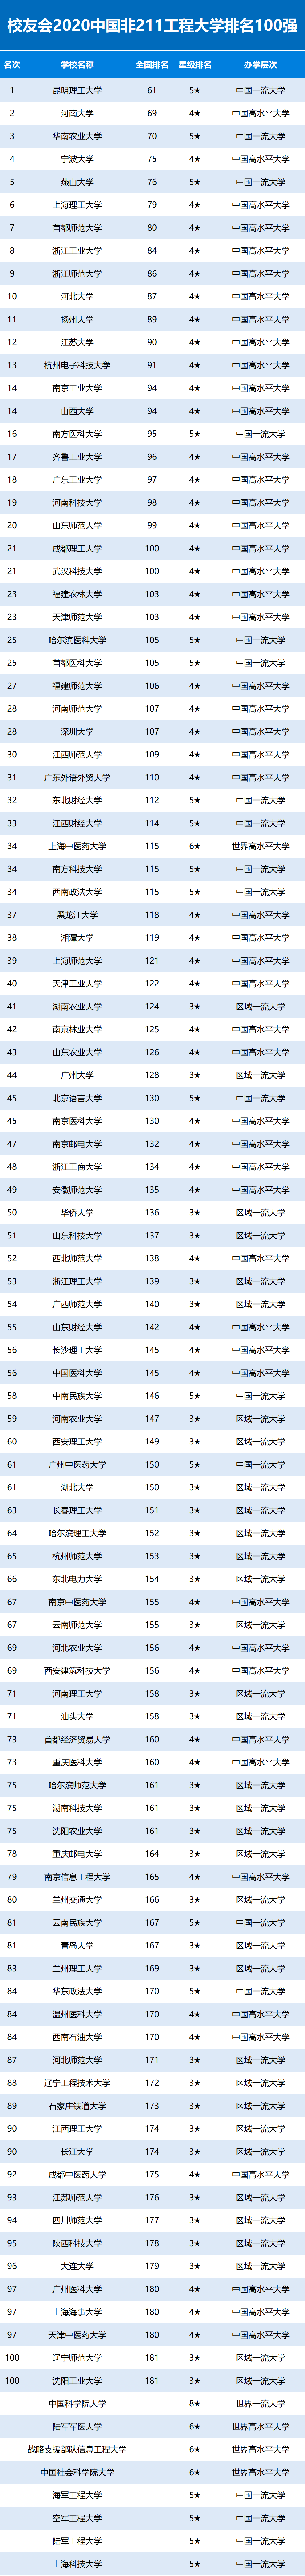 2020亚洲大学排名公_月榜|中国大学官微百强(2020年11月普通高校公号)